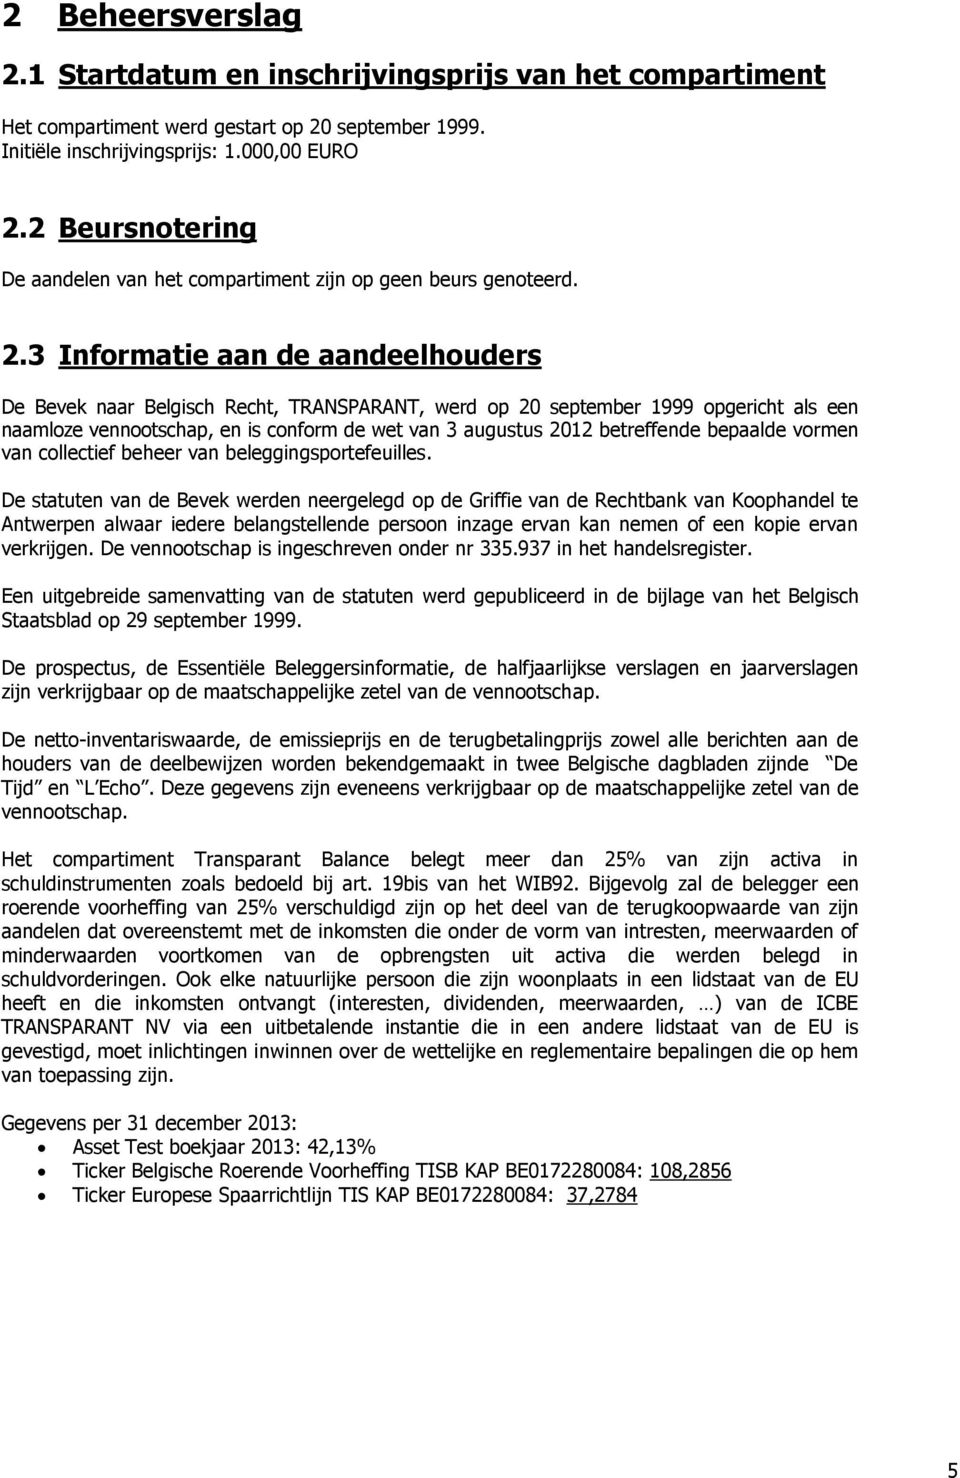 3 Informatie aan de aandeelhouders De Bevek naar Belgisch Recht, TRANSPARANT, werd op 20 september 1999 opgericht als een naamloze vennootschap, en is conform de wet van 3 augustus 2012 betreffende